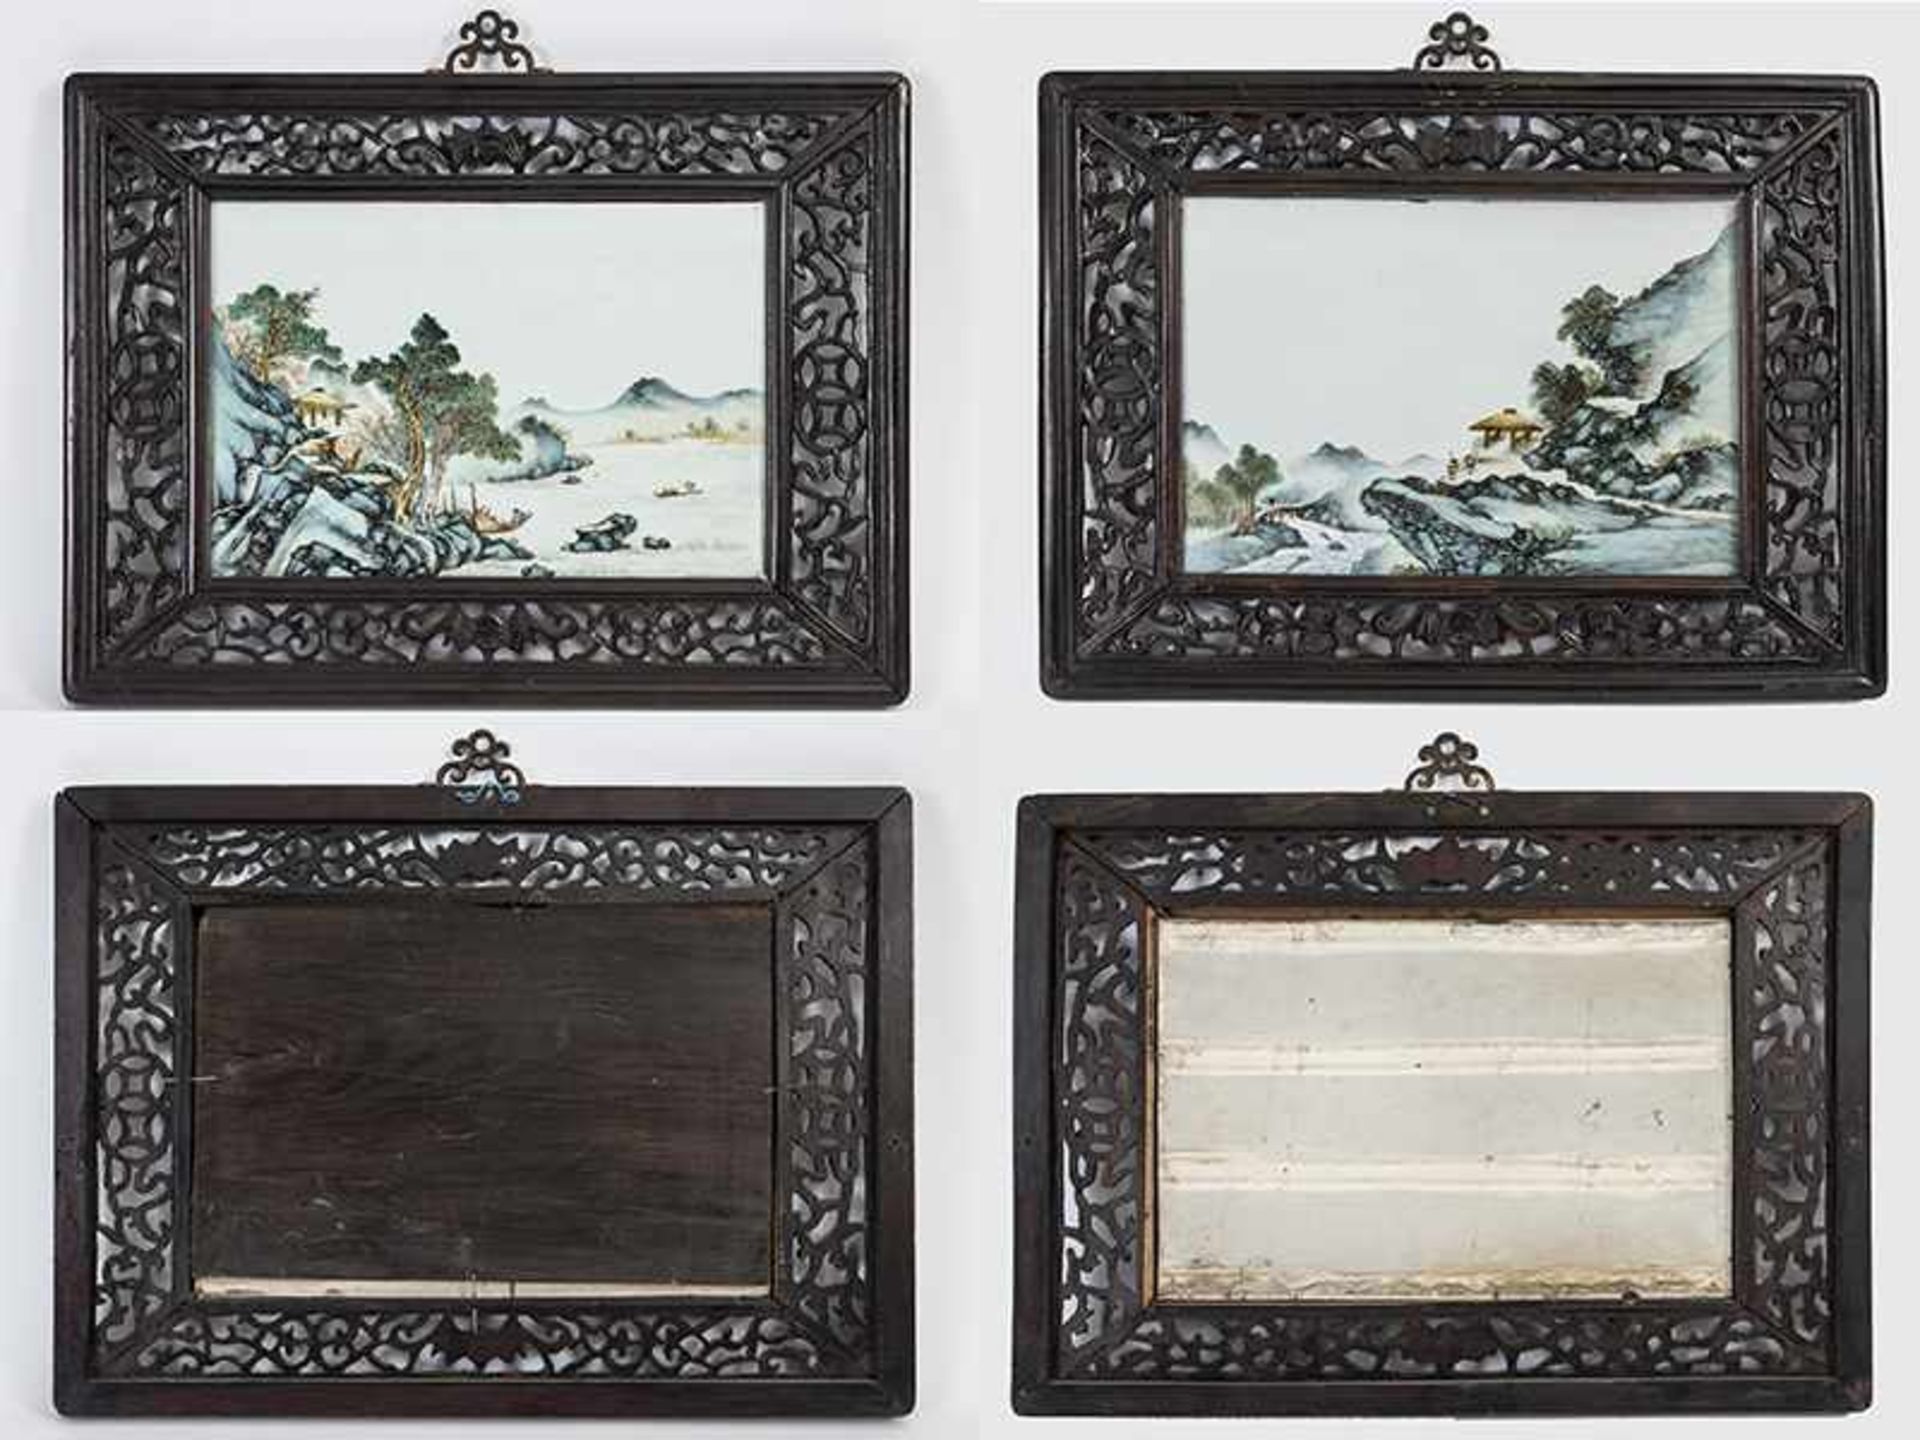 Paar gerahmte Landschafts-Bildtafeln, China, 20. Jh. Porzellan mit polychromen chinesischen